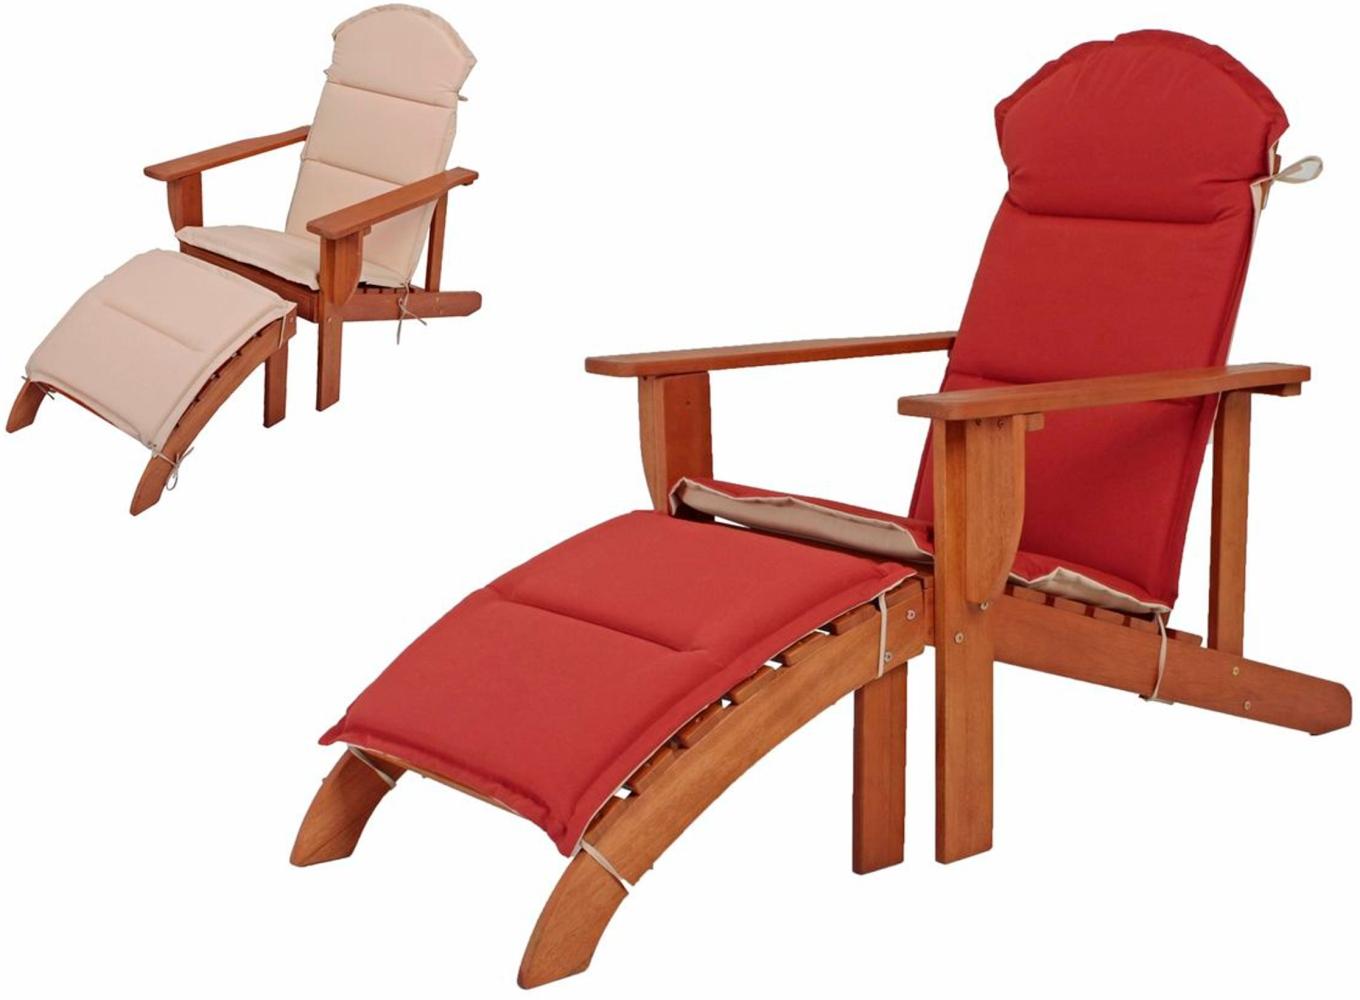 Adirondack Chair Gartenliege Relaxliege Liegestuhl Wendeauflage Bild 1